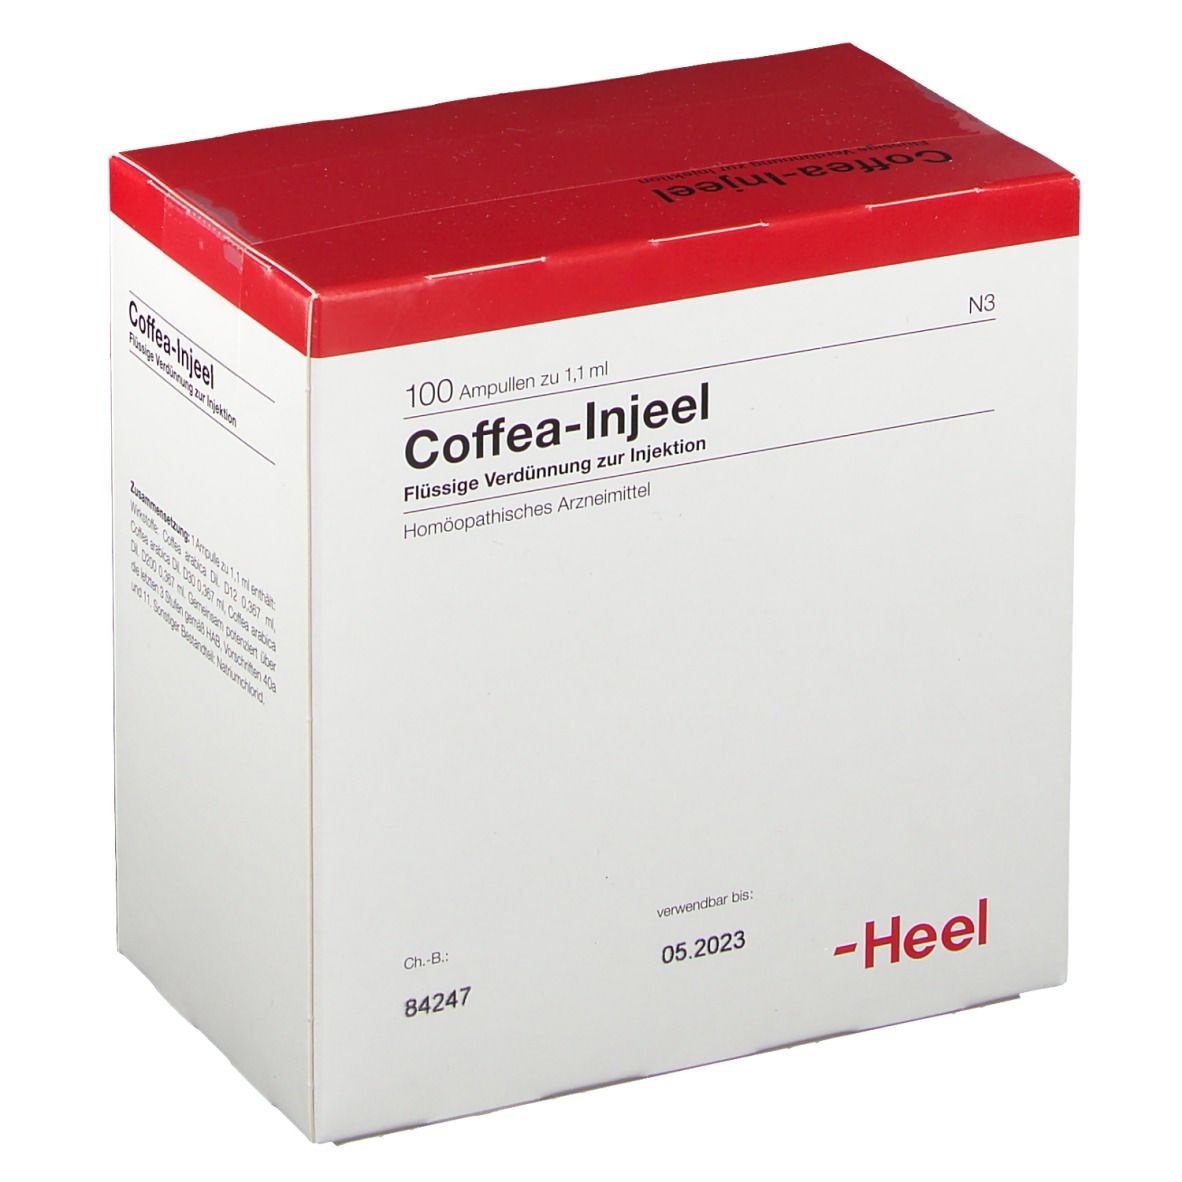 Coffea-Injeel® Ampullen